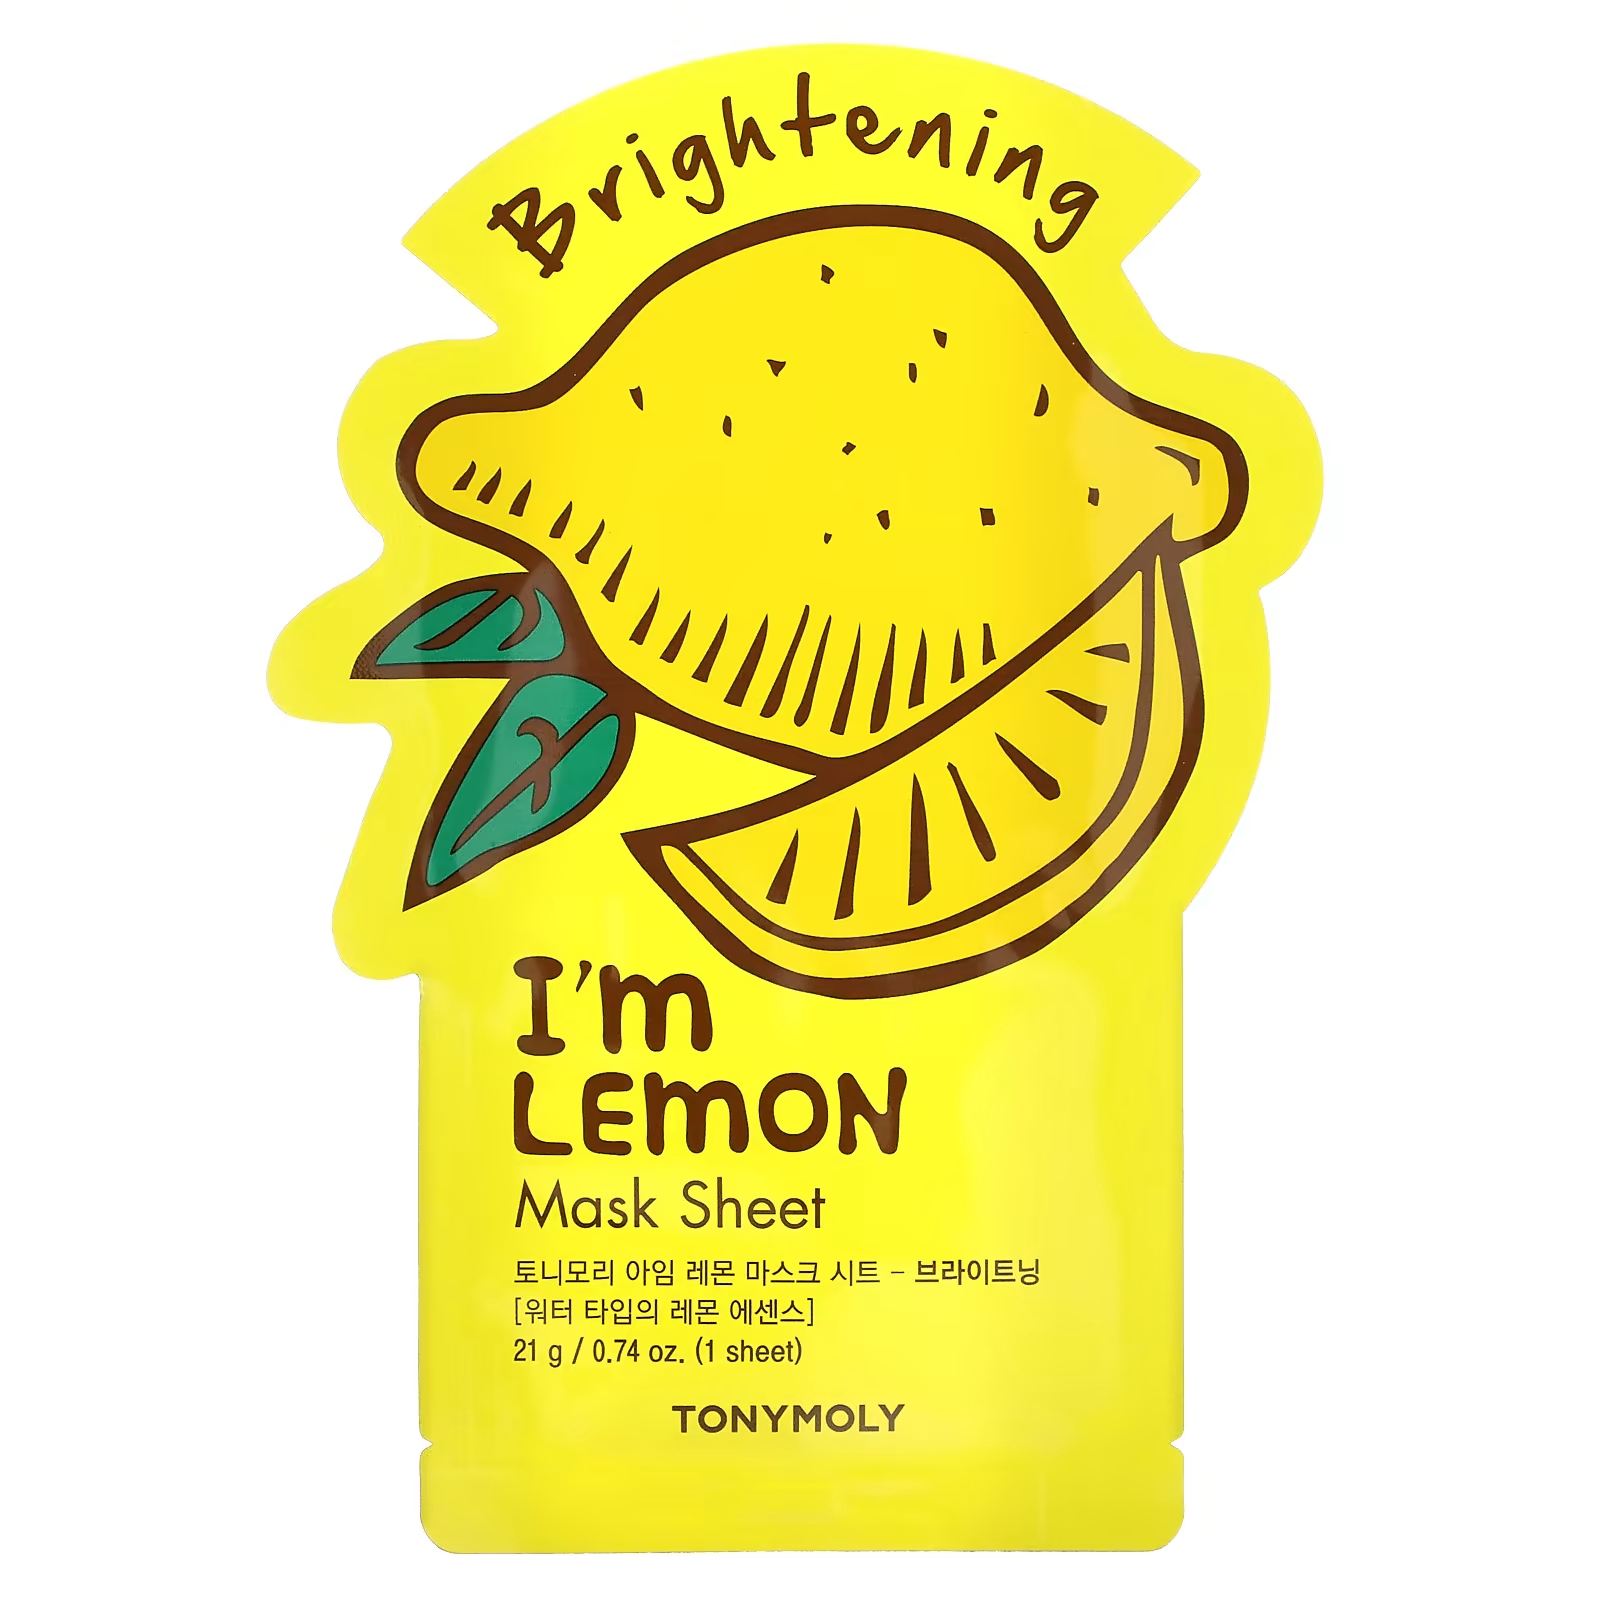 Tony Moly I'm Lemon Осветляющая косметическая маска, 1 шт., 0,74 унции (21 г) tony moly i’m rice clear skin beauty тканевая маска 1 шт 0 74 унции 21 г